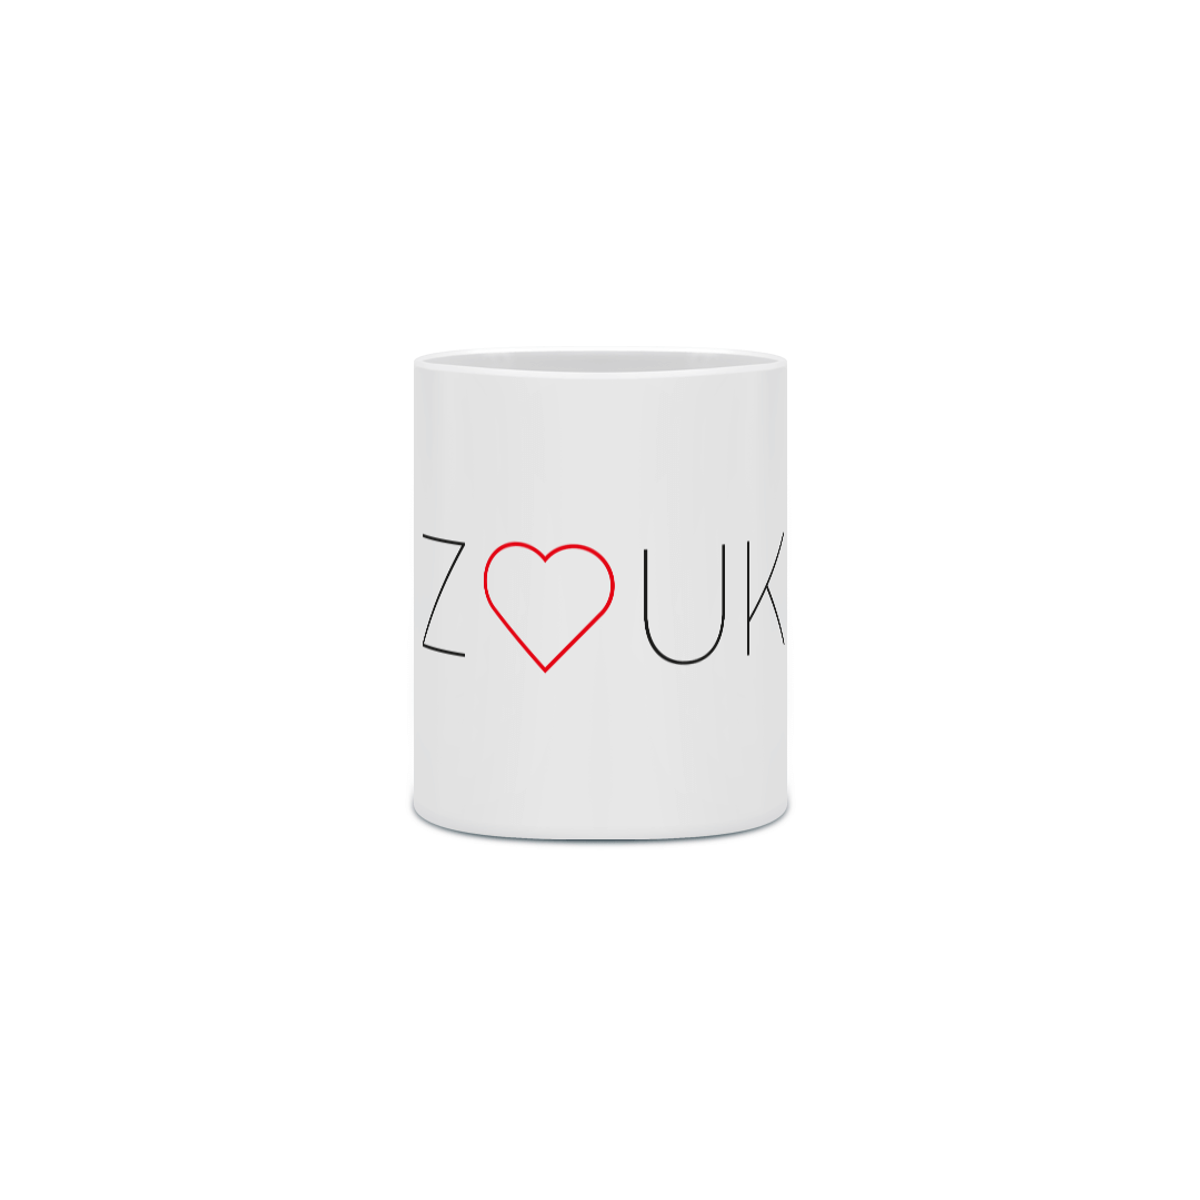 Nome do produto: CAneca Zouk Heart